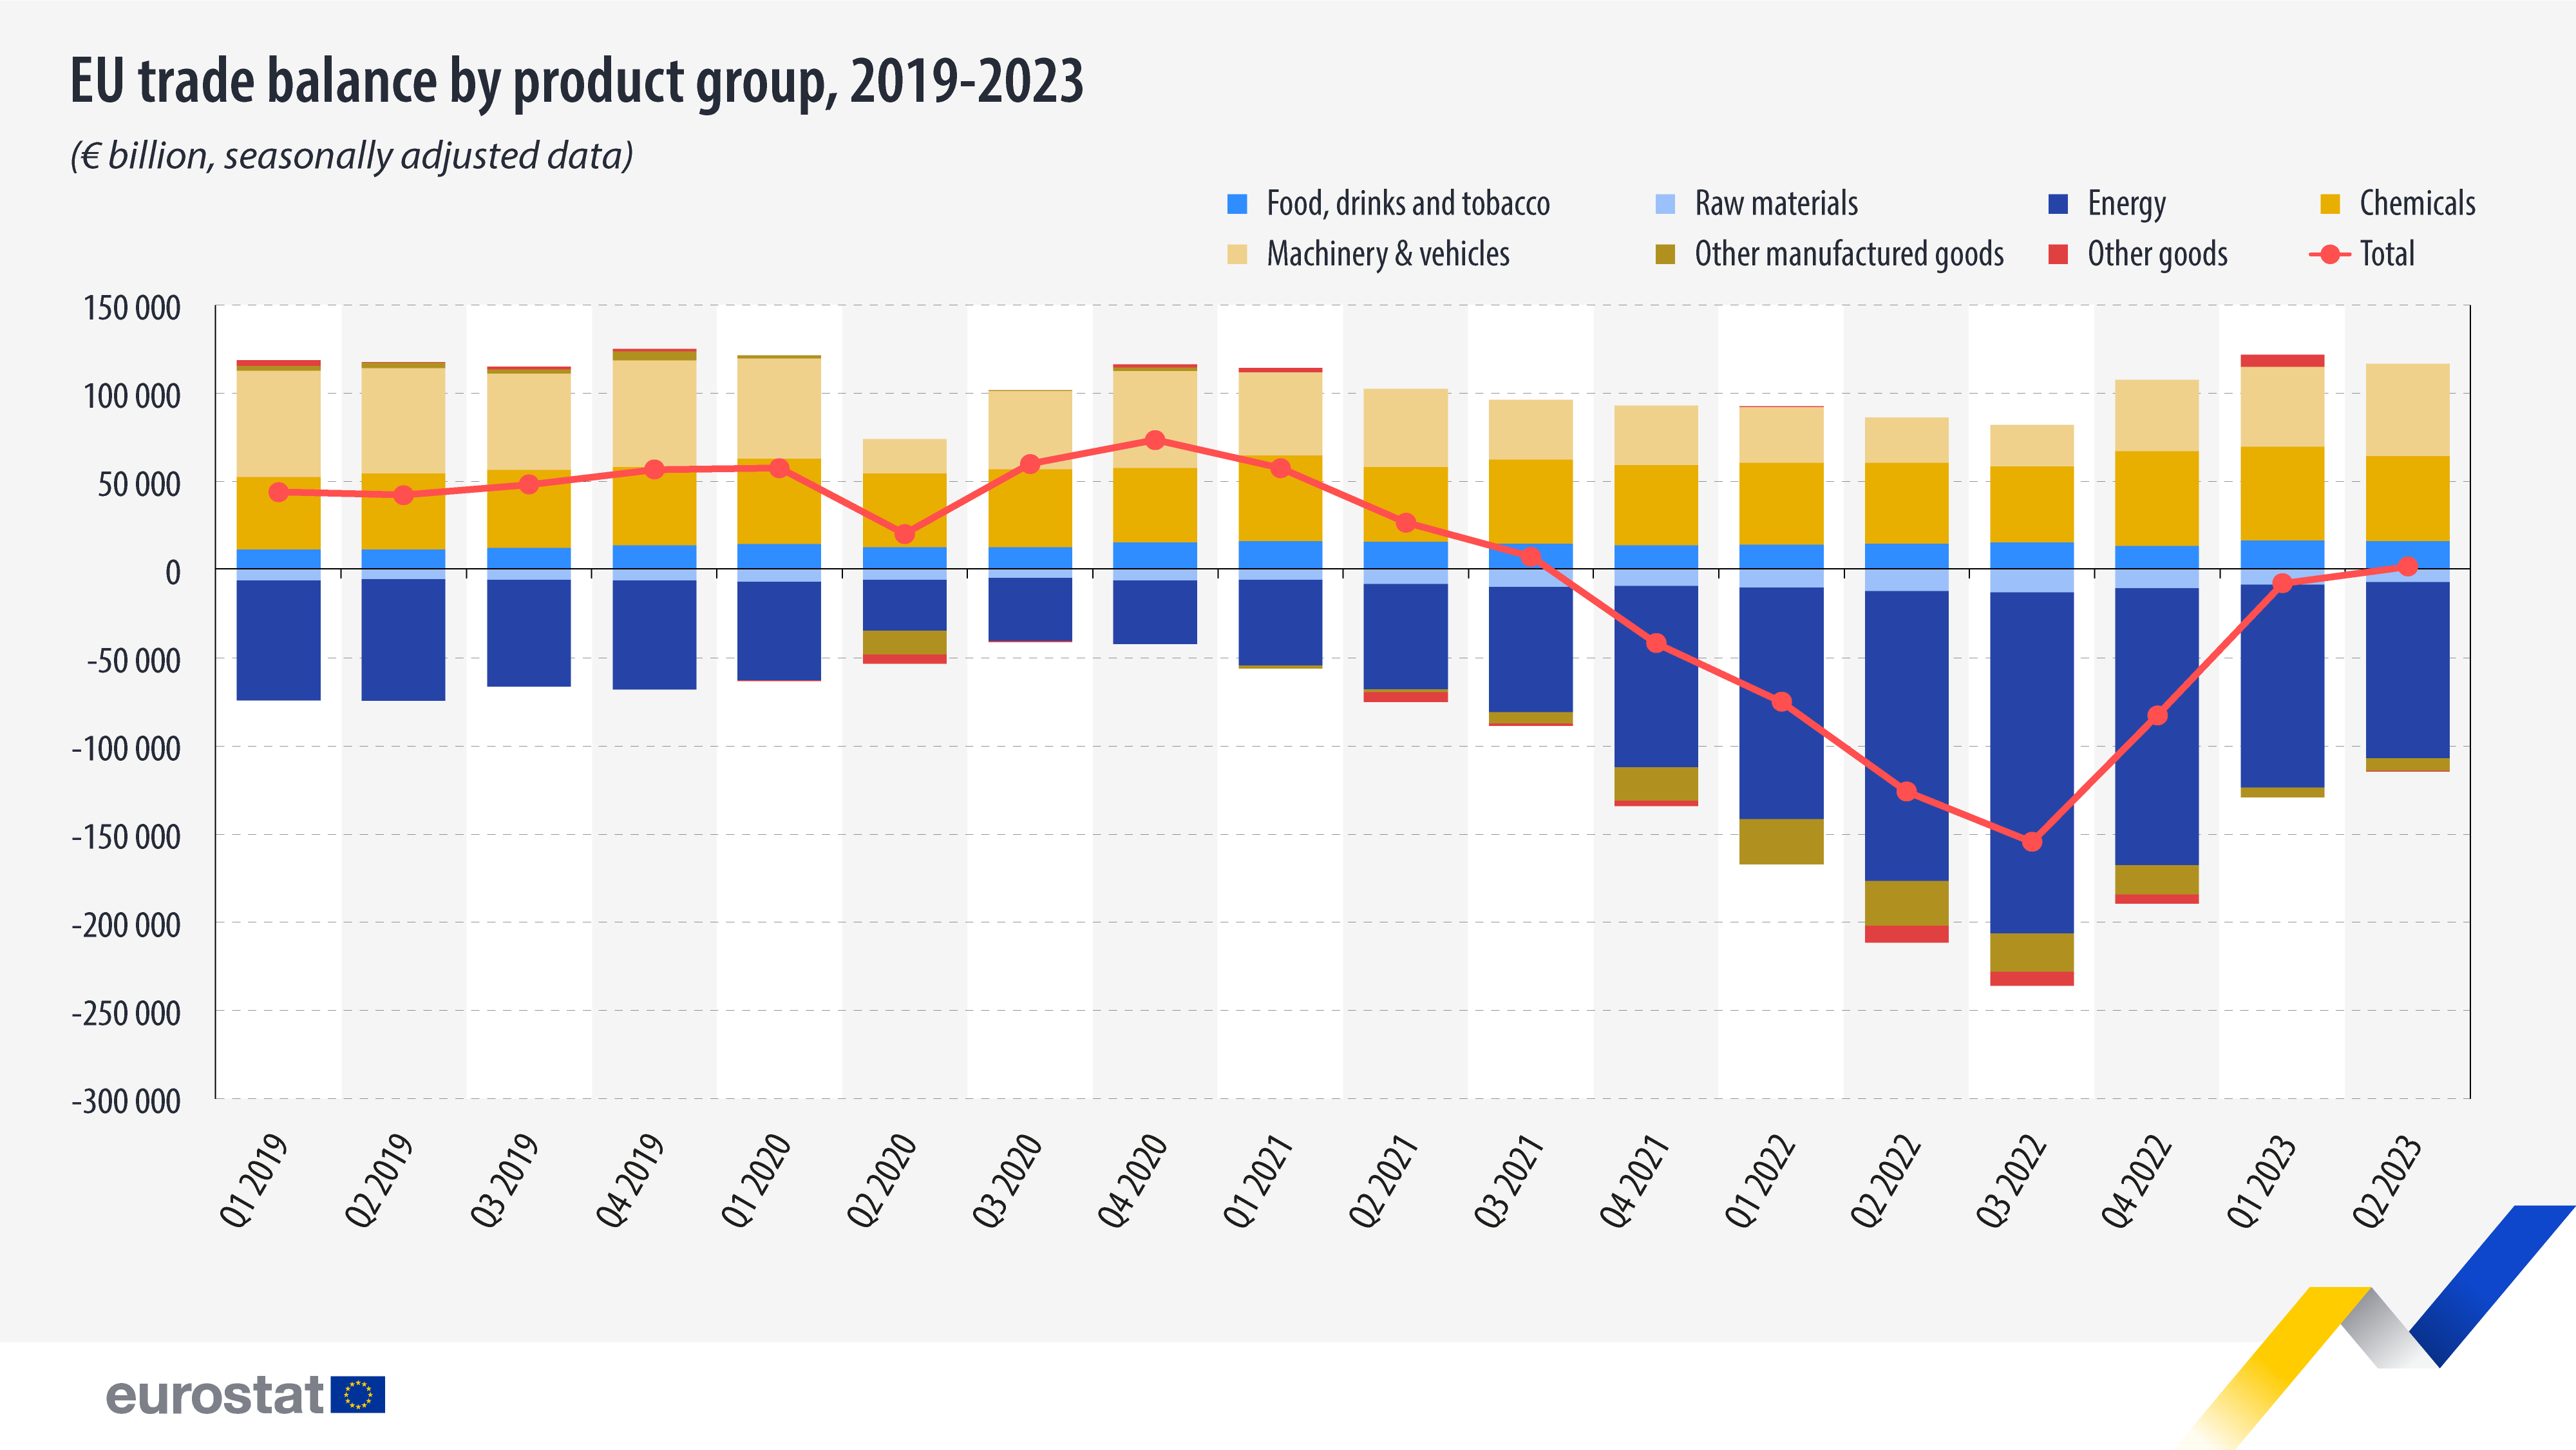 Grafico a barre e linea di tendenza: bilancia commerciale dell'UE per gruppo di prodotti, 2019-2023 (miliardi di euro, dati destagionalizzati)